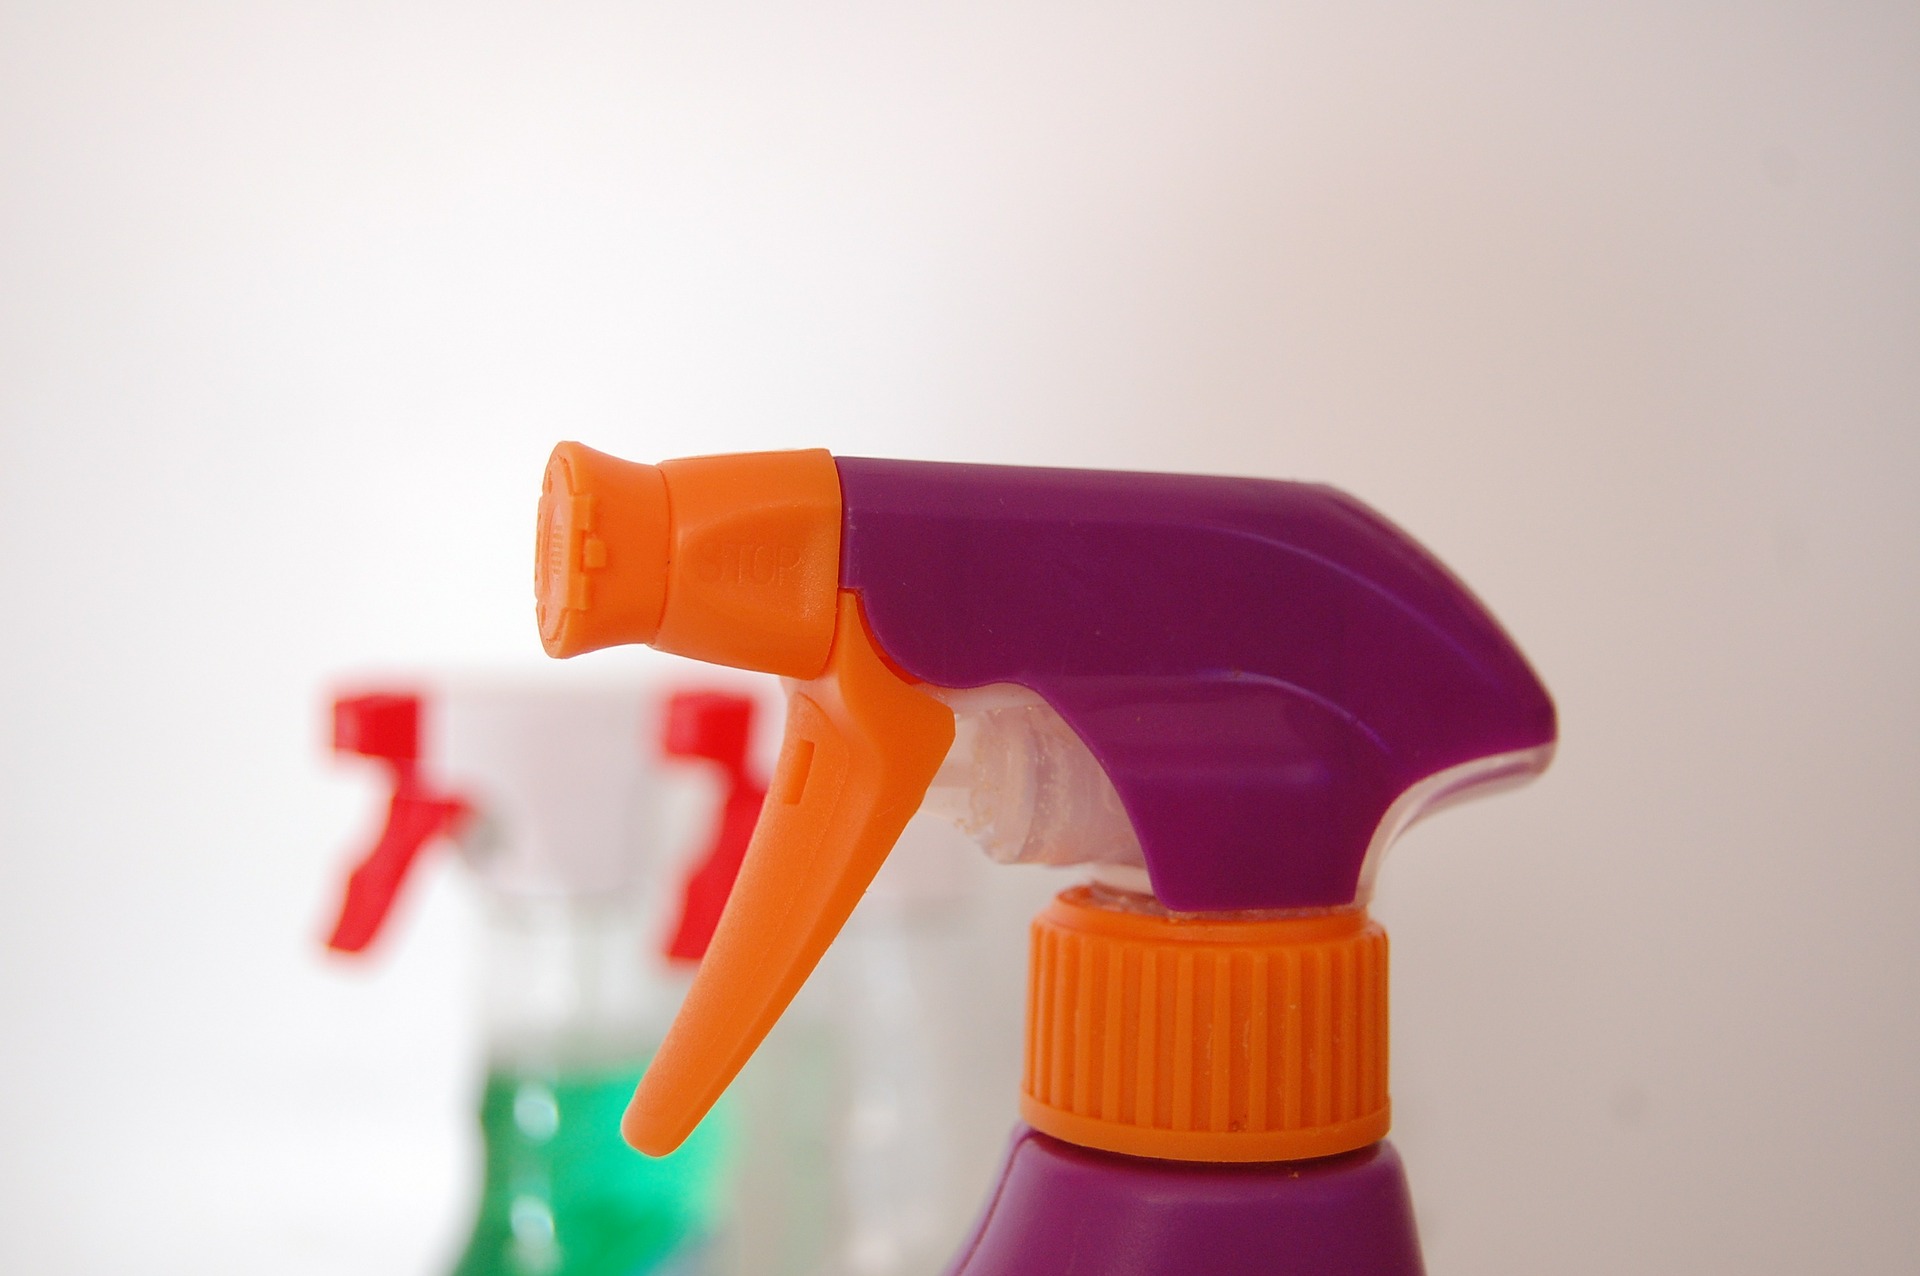 środki czyszczące do domu